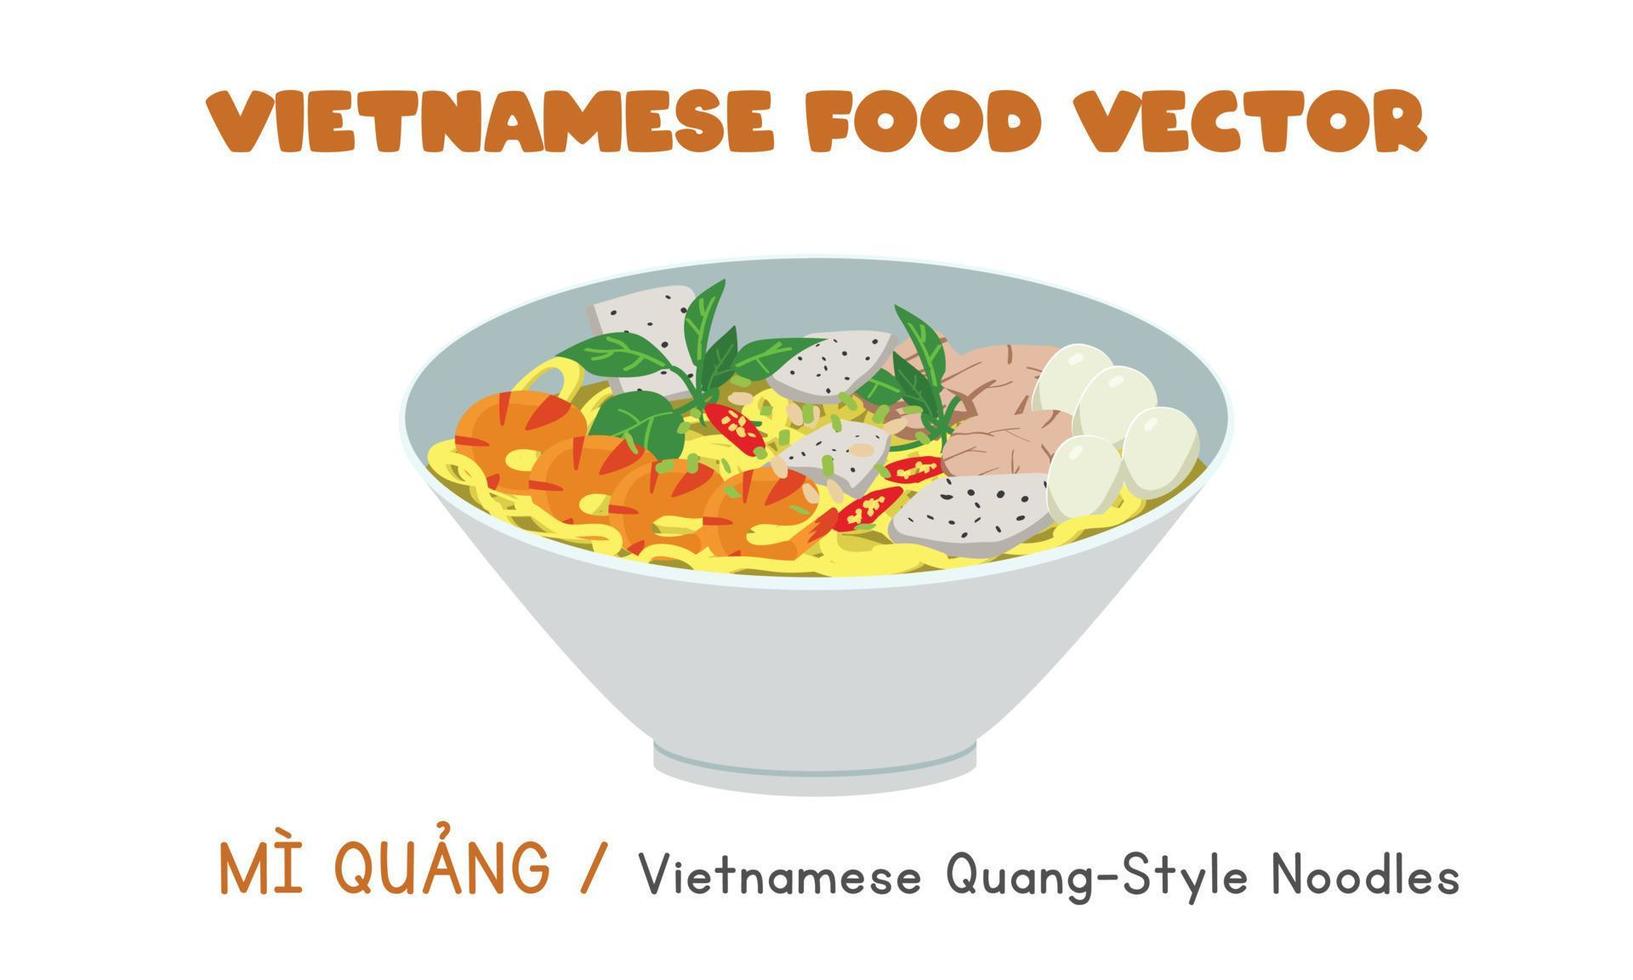 design de vetor plano de macarrão estilo quang vietnamita. estilo de desenhos animados de clipart mi quang. comida asiática. cozinha vietnamita